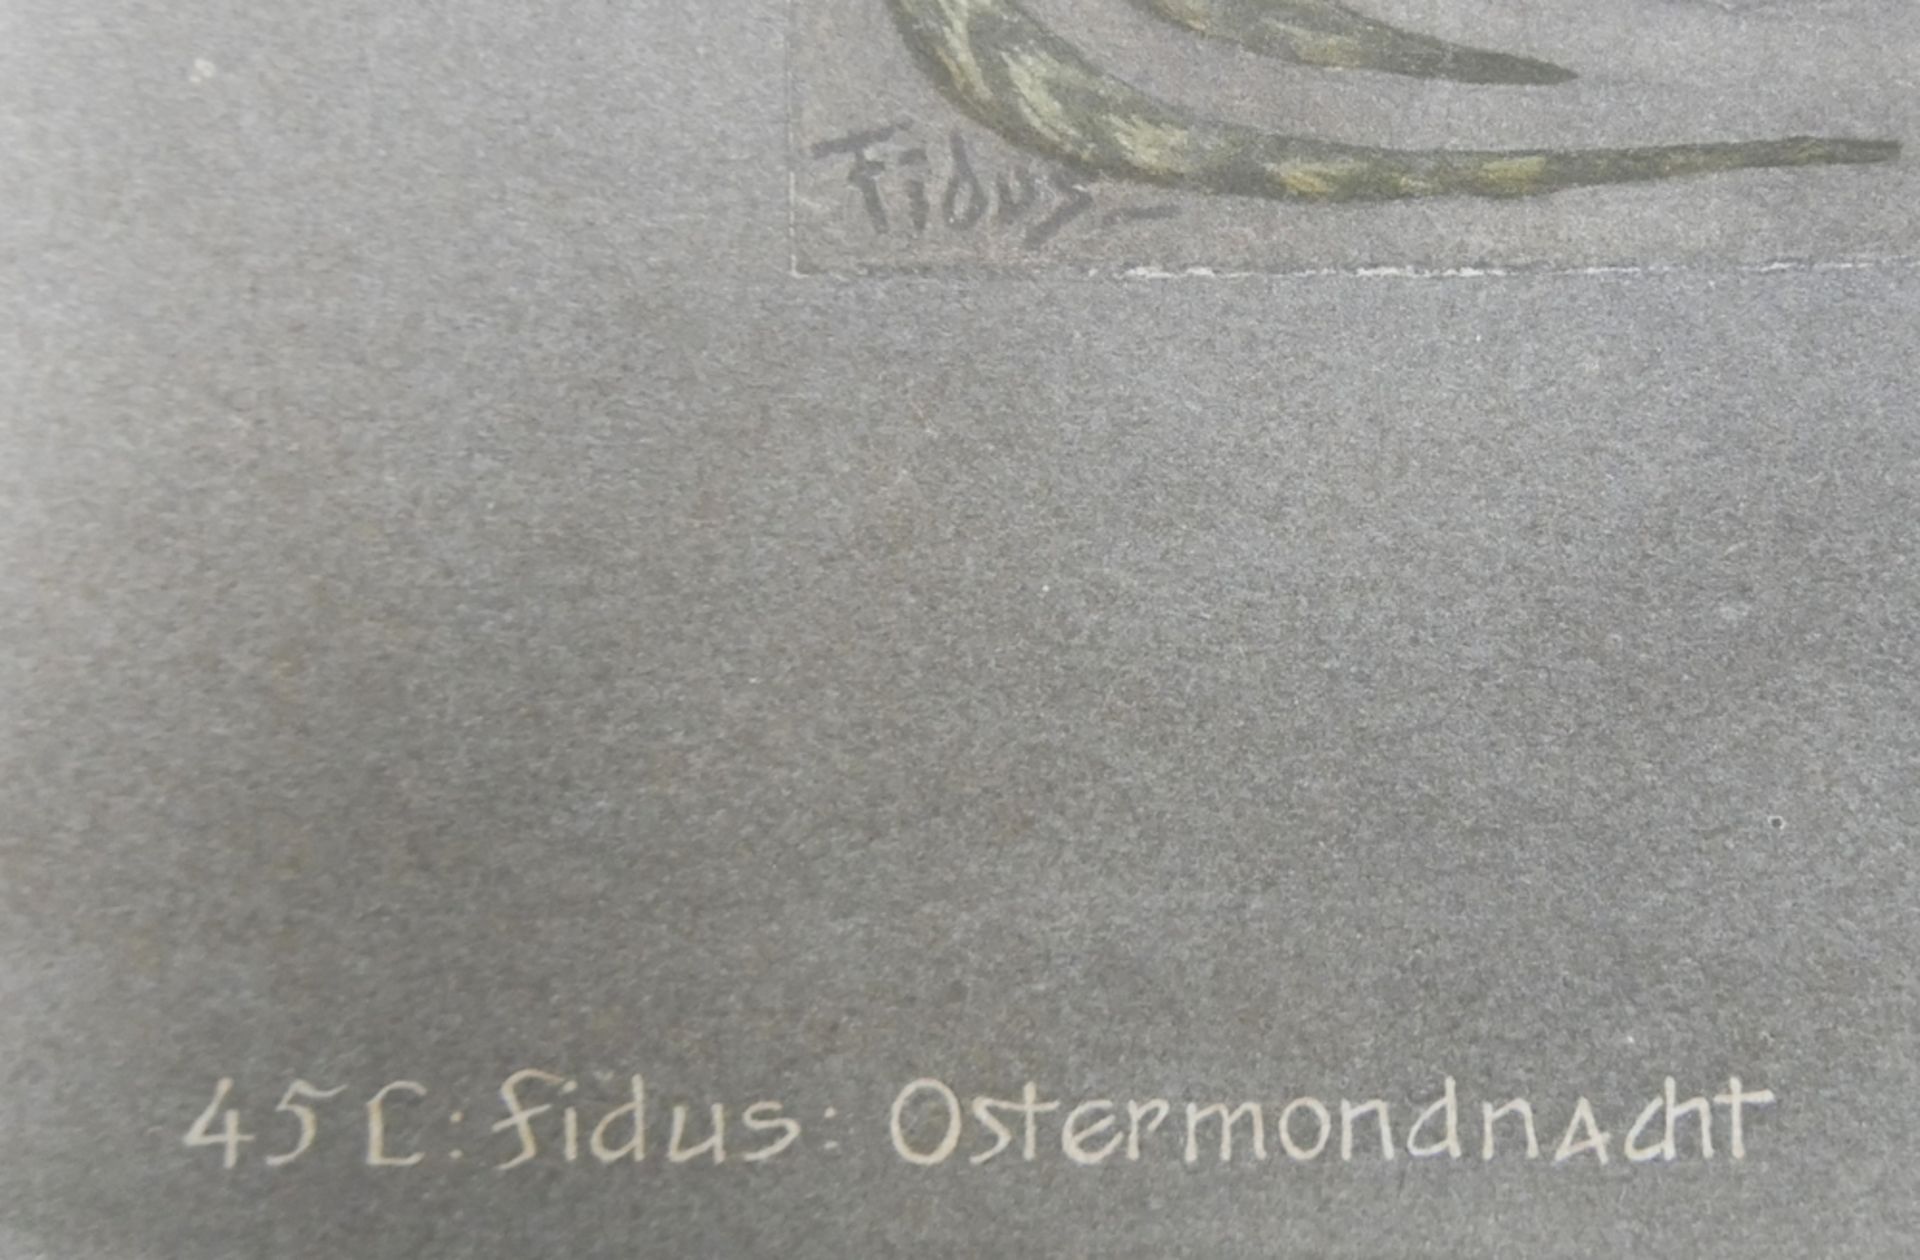 Hugo Höppener "45 L. Fidus - Ostermondnacht" Verlag des St. Georges Budes Woltersdorf bei Erkner. - Bild 2 aus 2